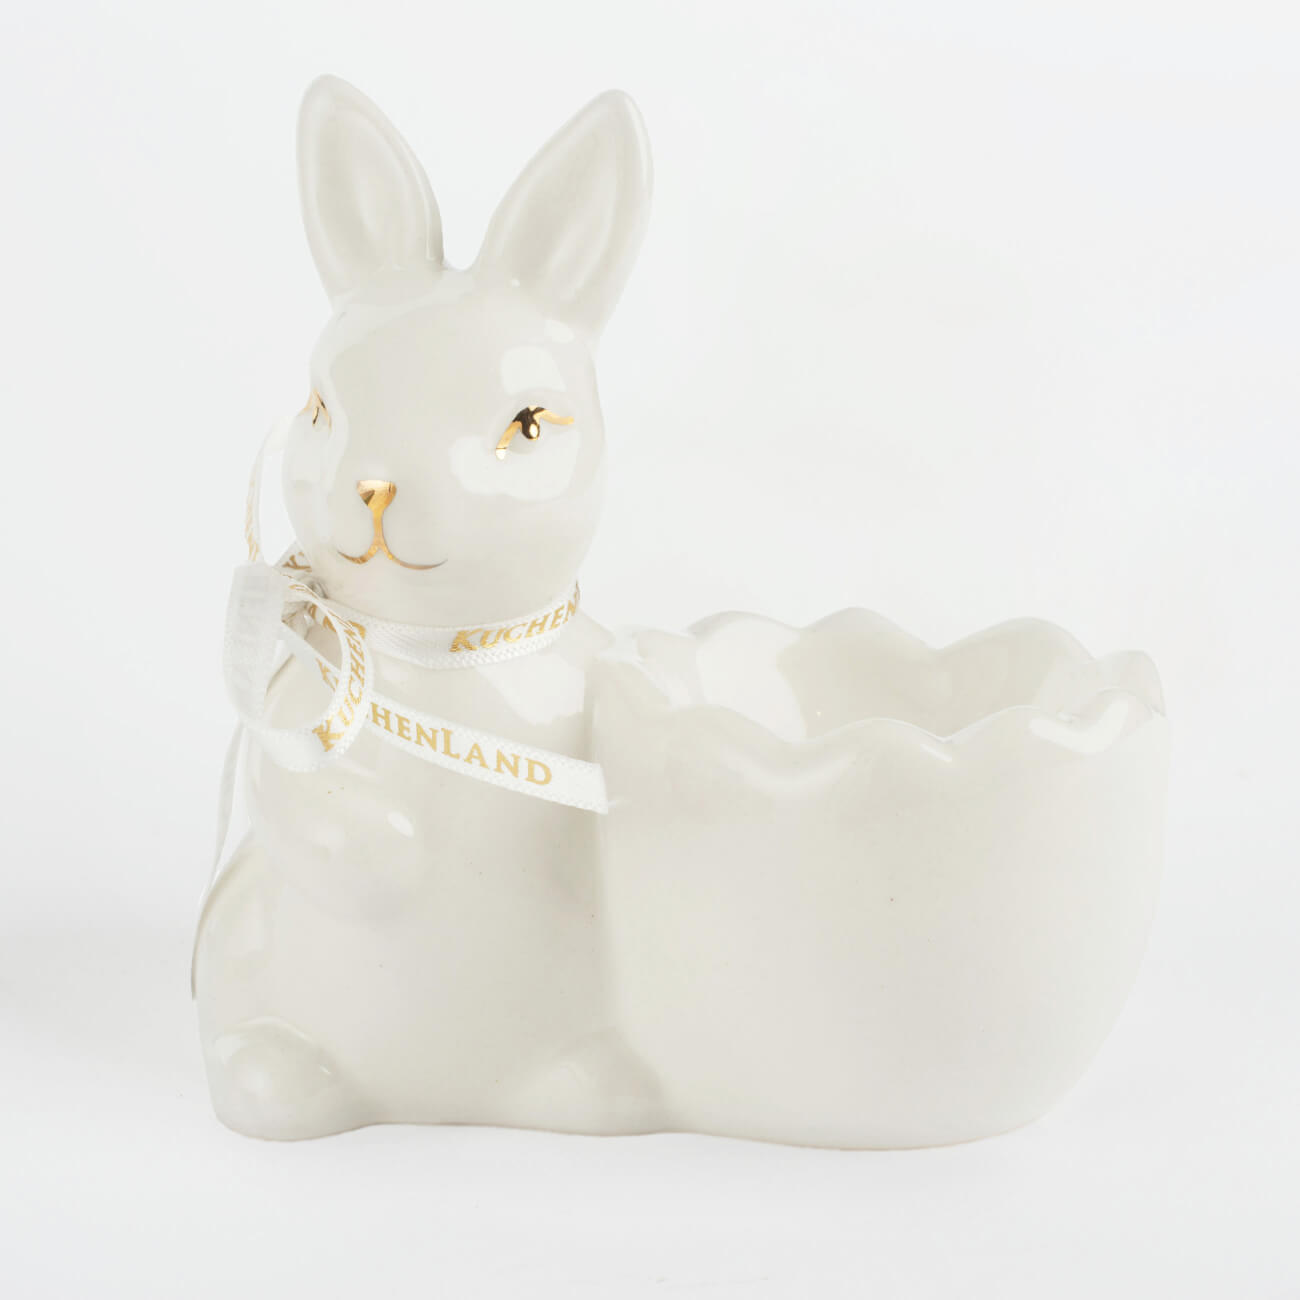 Подставка для яйца, 10 см, керамика, бело-золотистая, Кролик со скорлупкой, Easter gold подставка для яйца